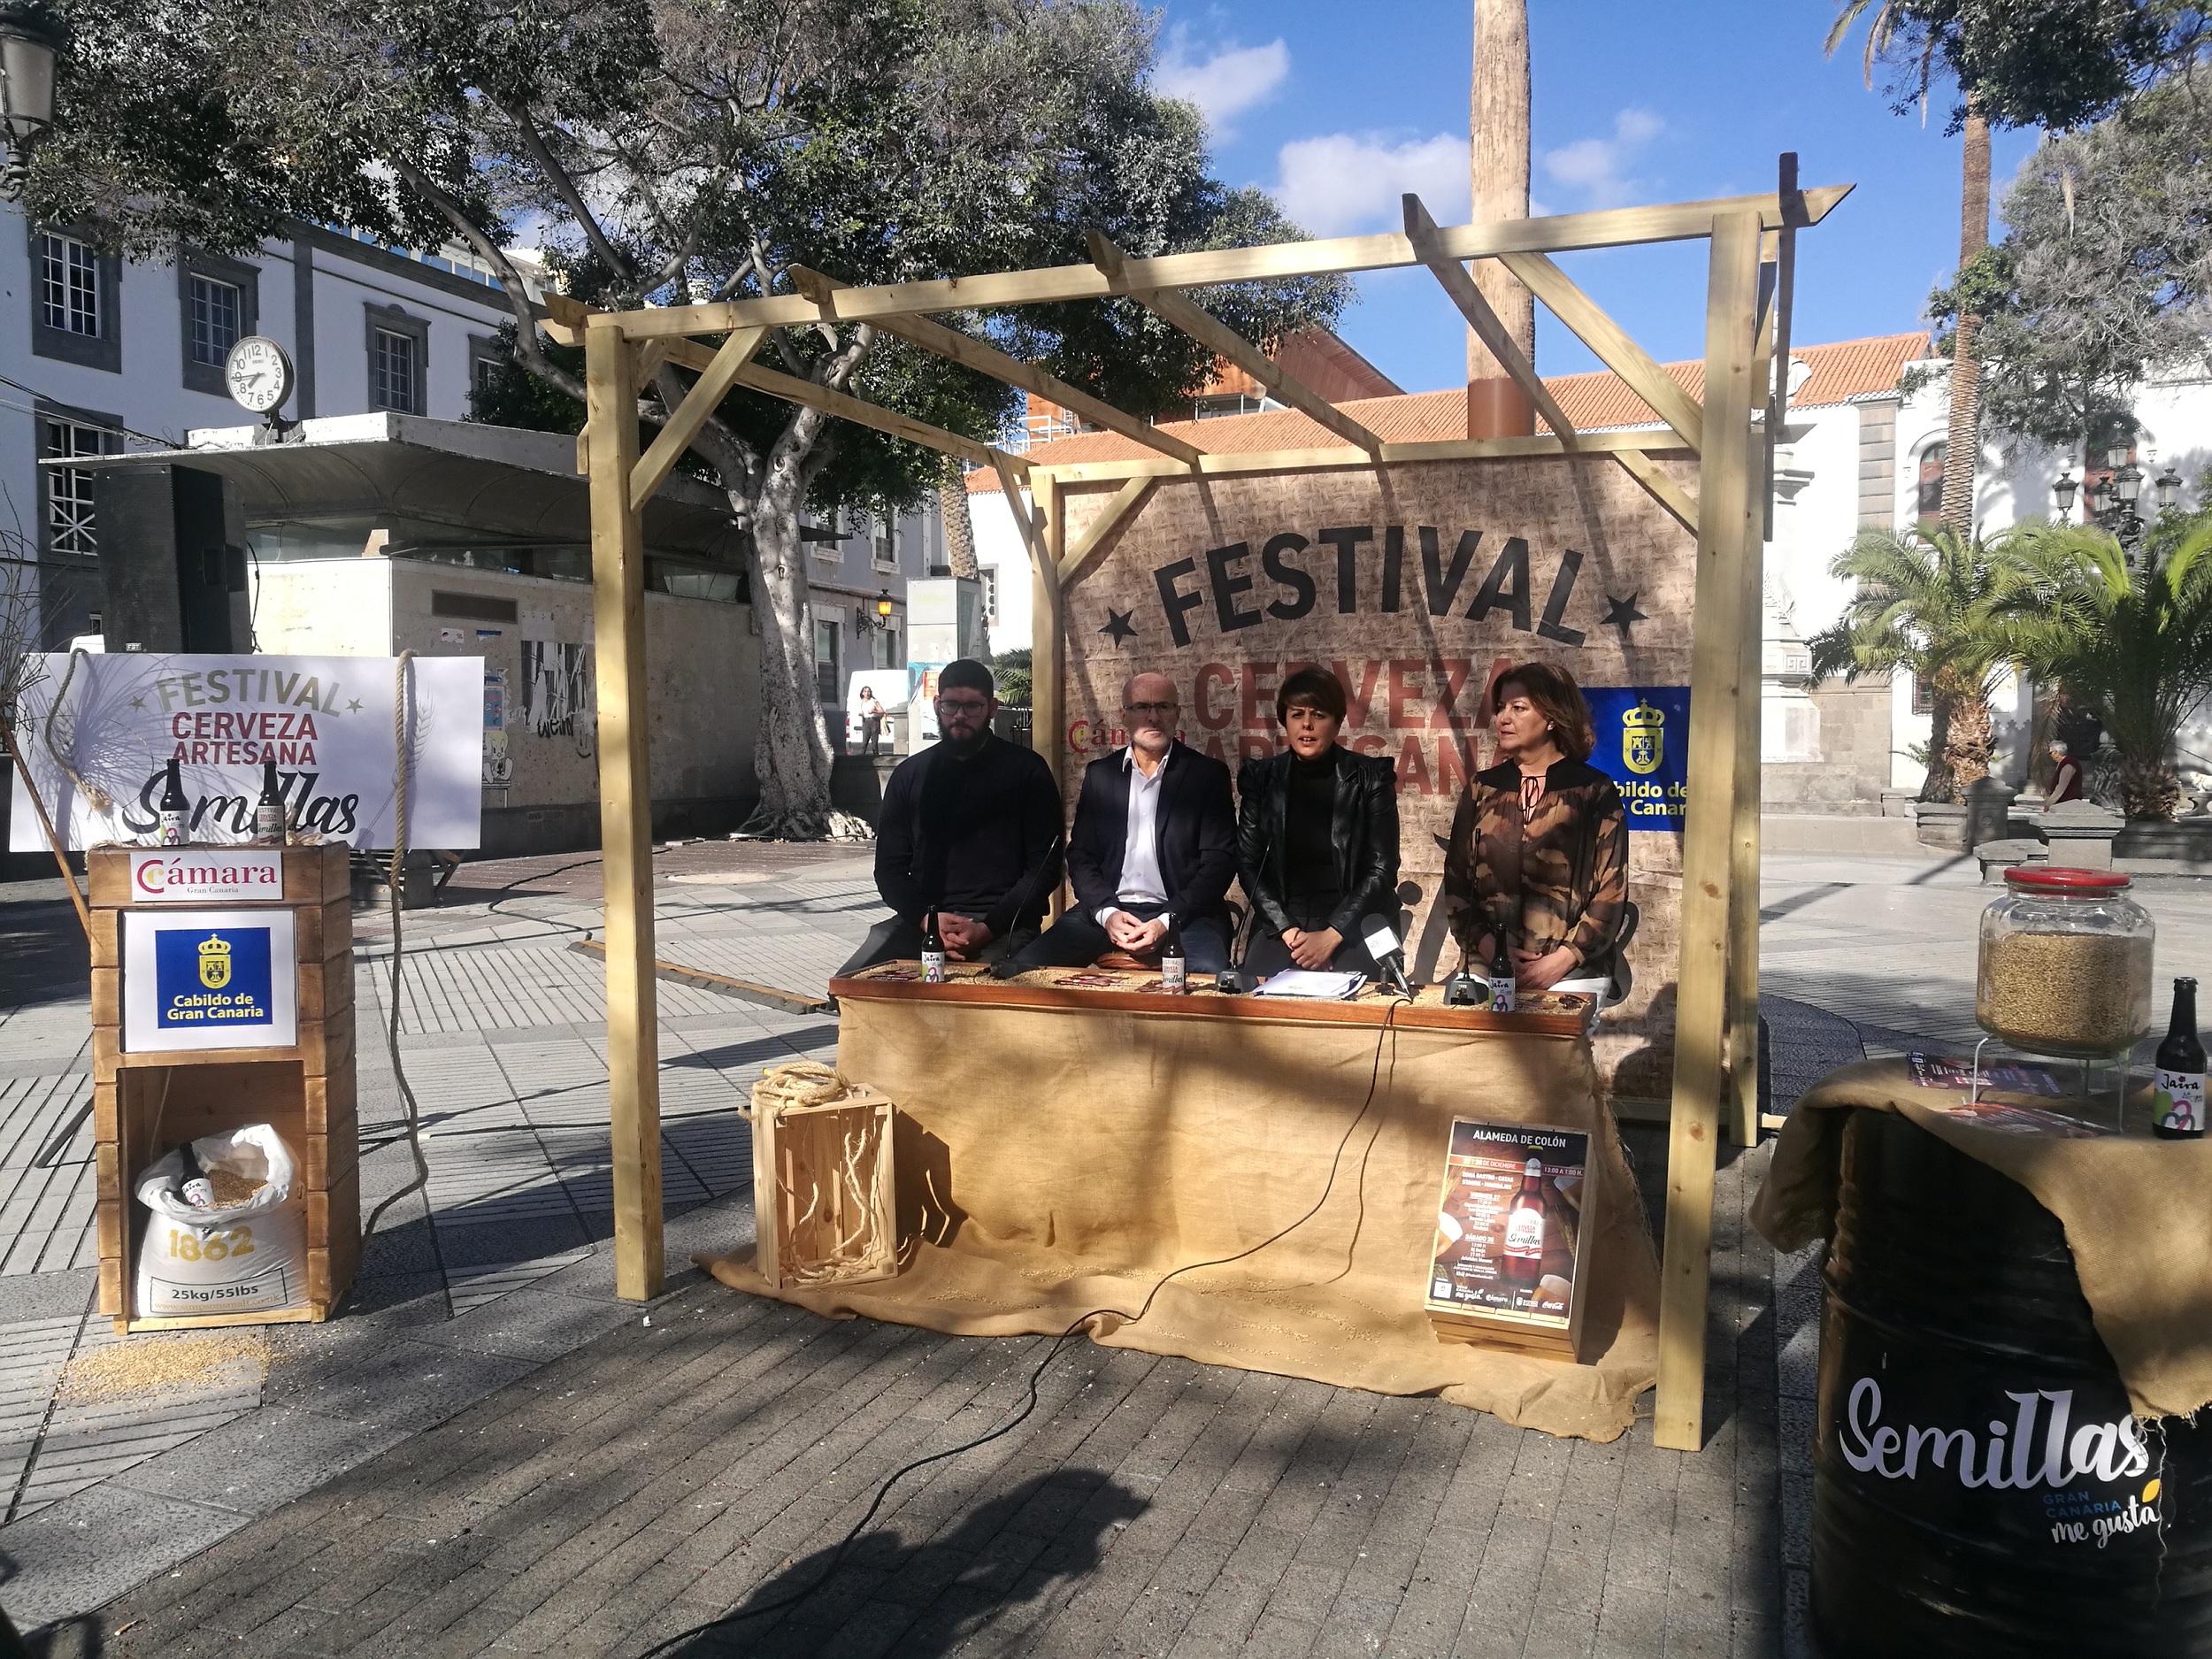 Una docena de marcas de cervezas artesanales isleñas se dan cita en Gran Canaria en el Festival Semillas